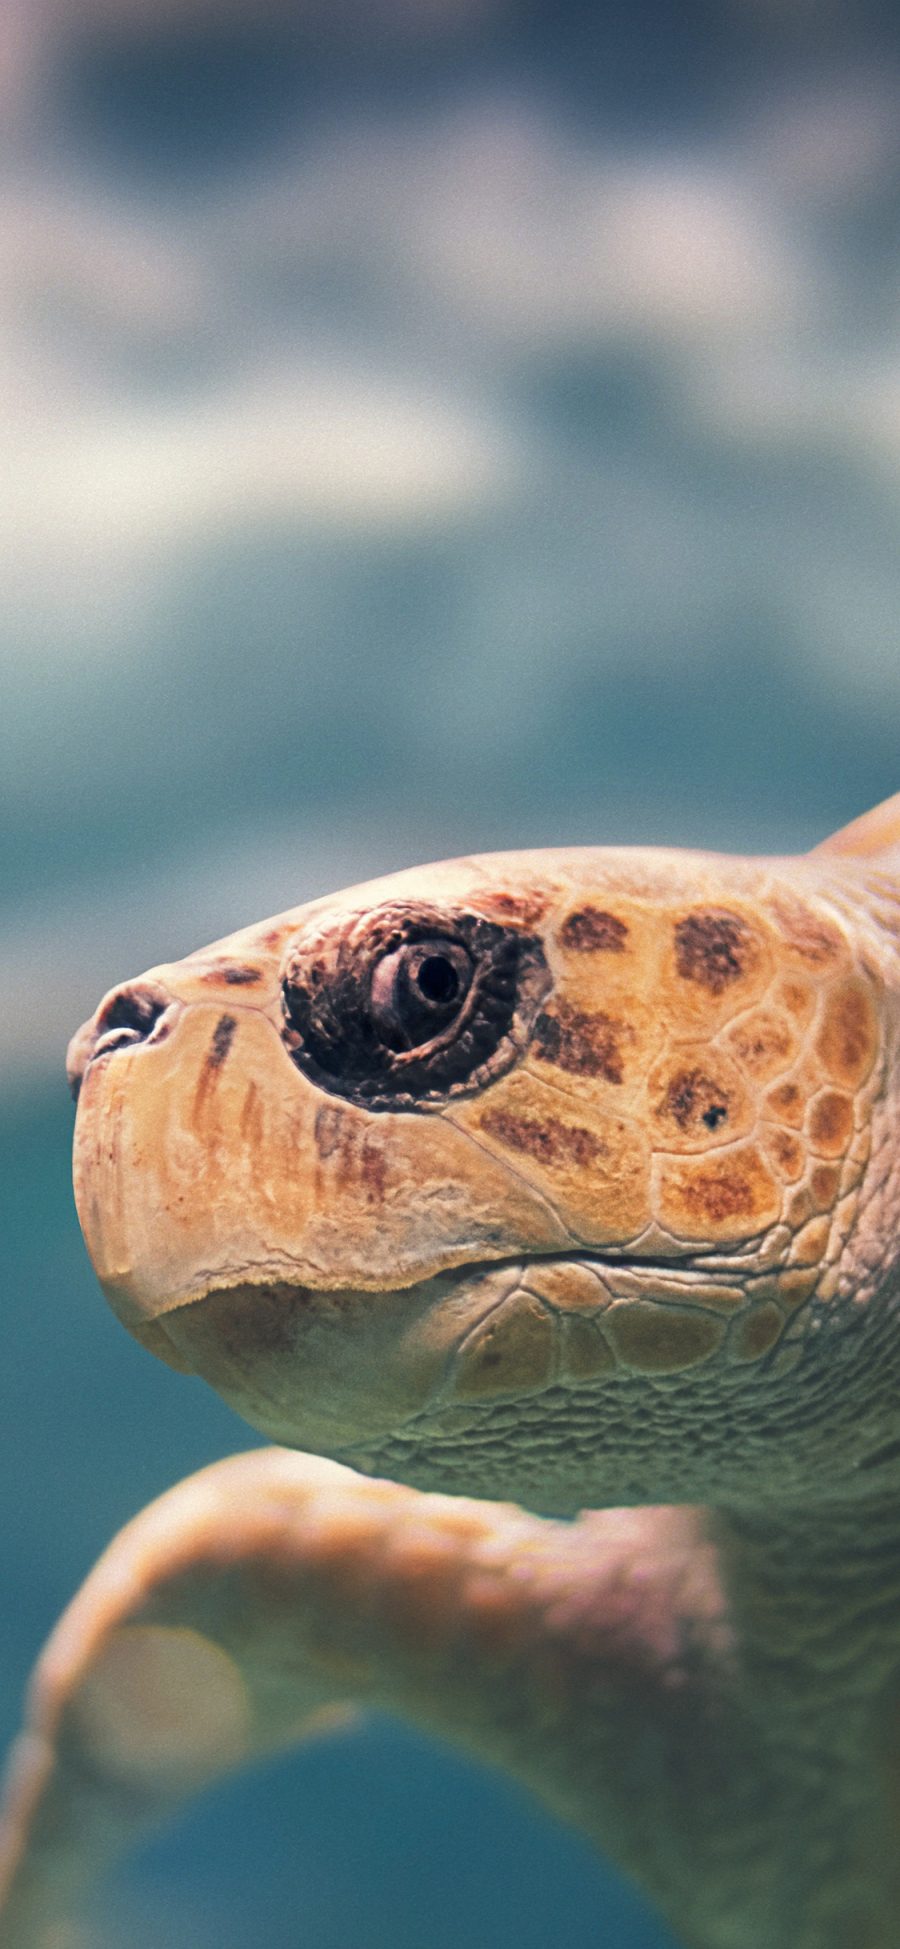 [2436×1125]海洋 生物 海龟 头部 苹果手机壁纸图片